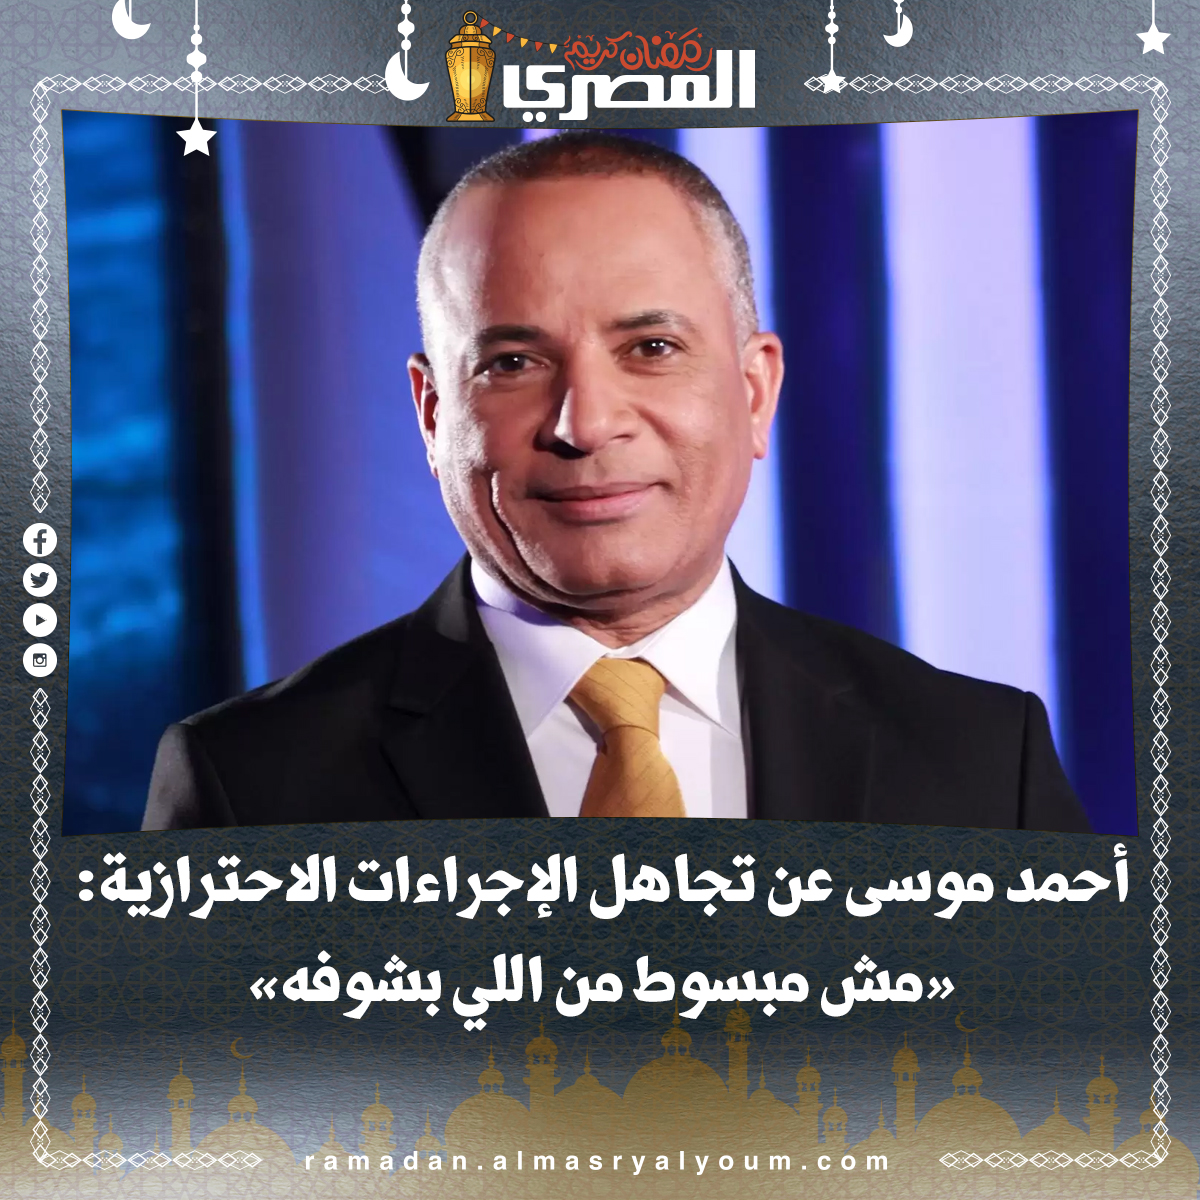 أحمد موسى «ما أشاهده لا يسر أحد»، و«تحذيري الدائم يأتي من واقع حرصي على 100 مليون مصري»